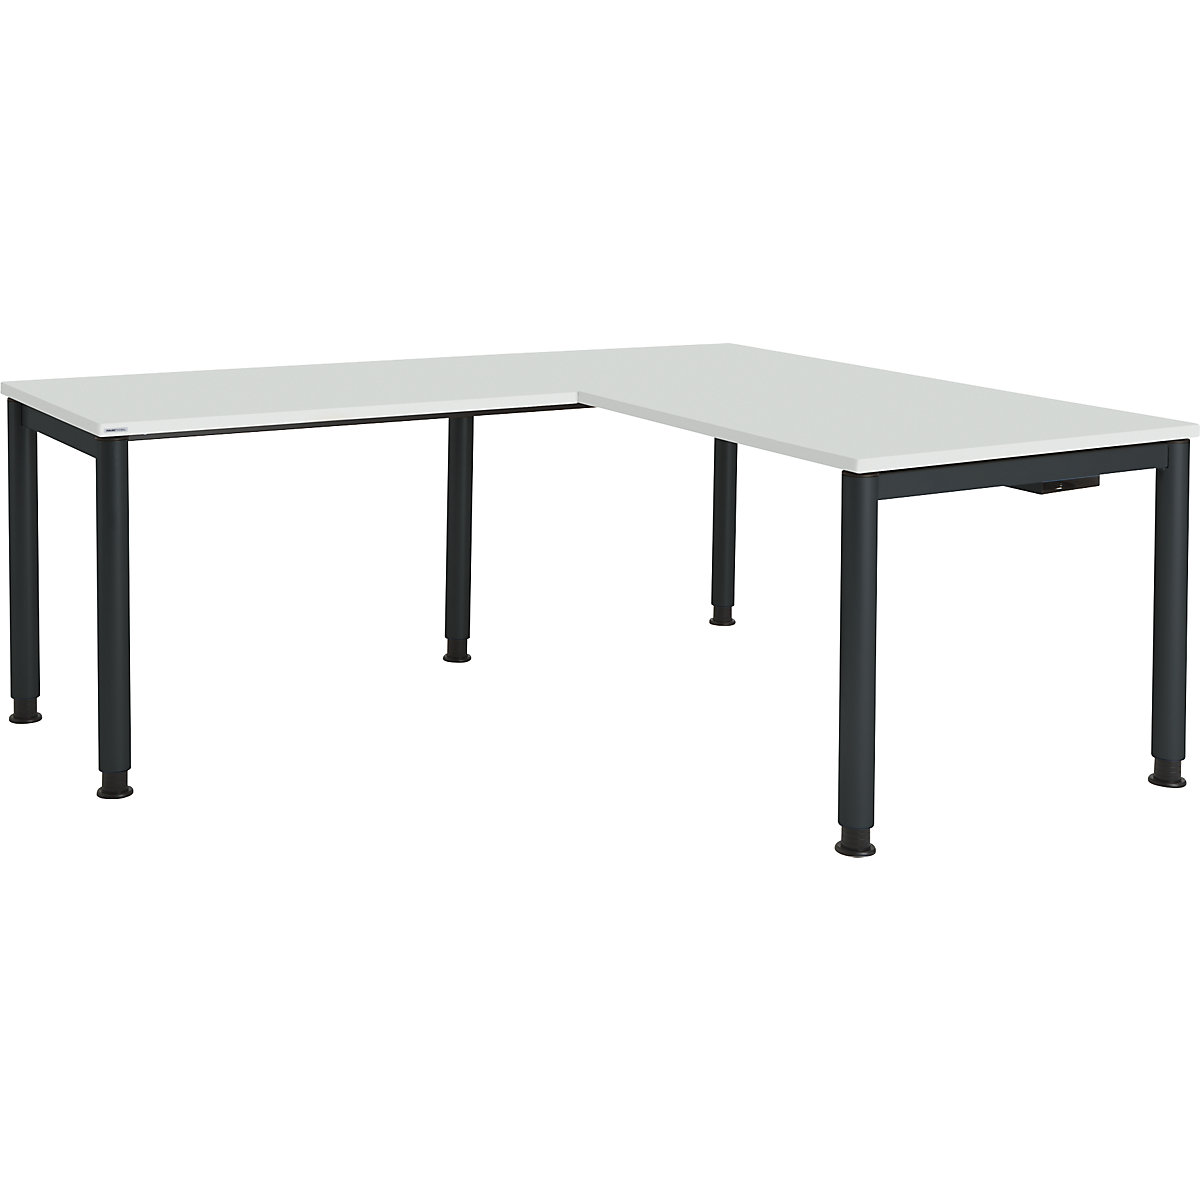 Kombinovaný psací stůl s kruhovými nohami – mauser